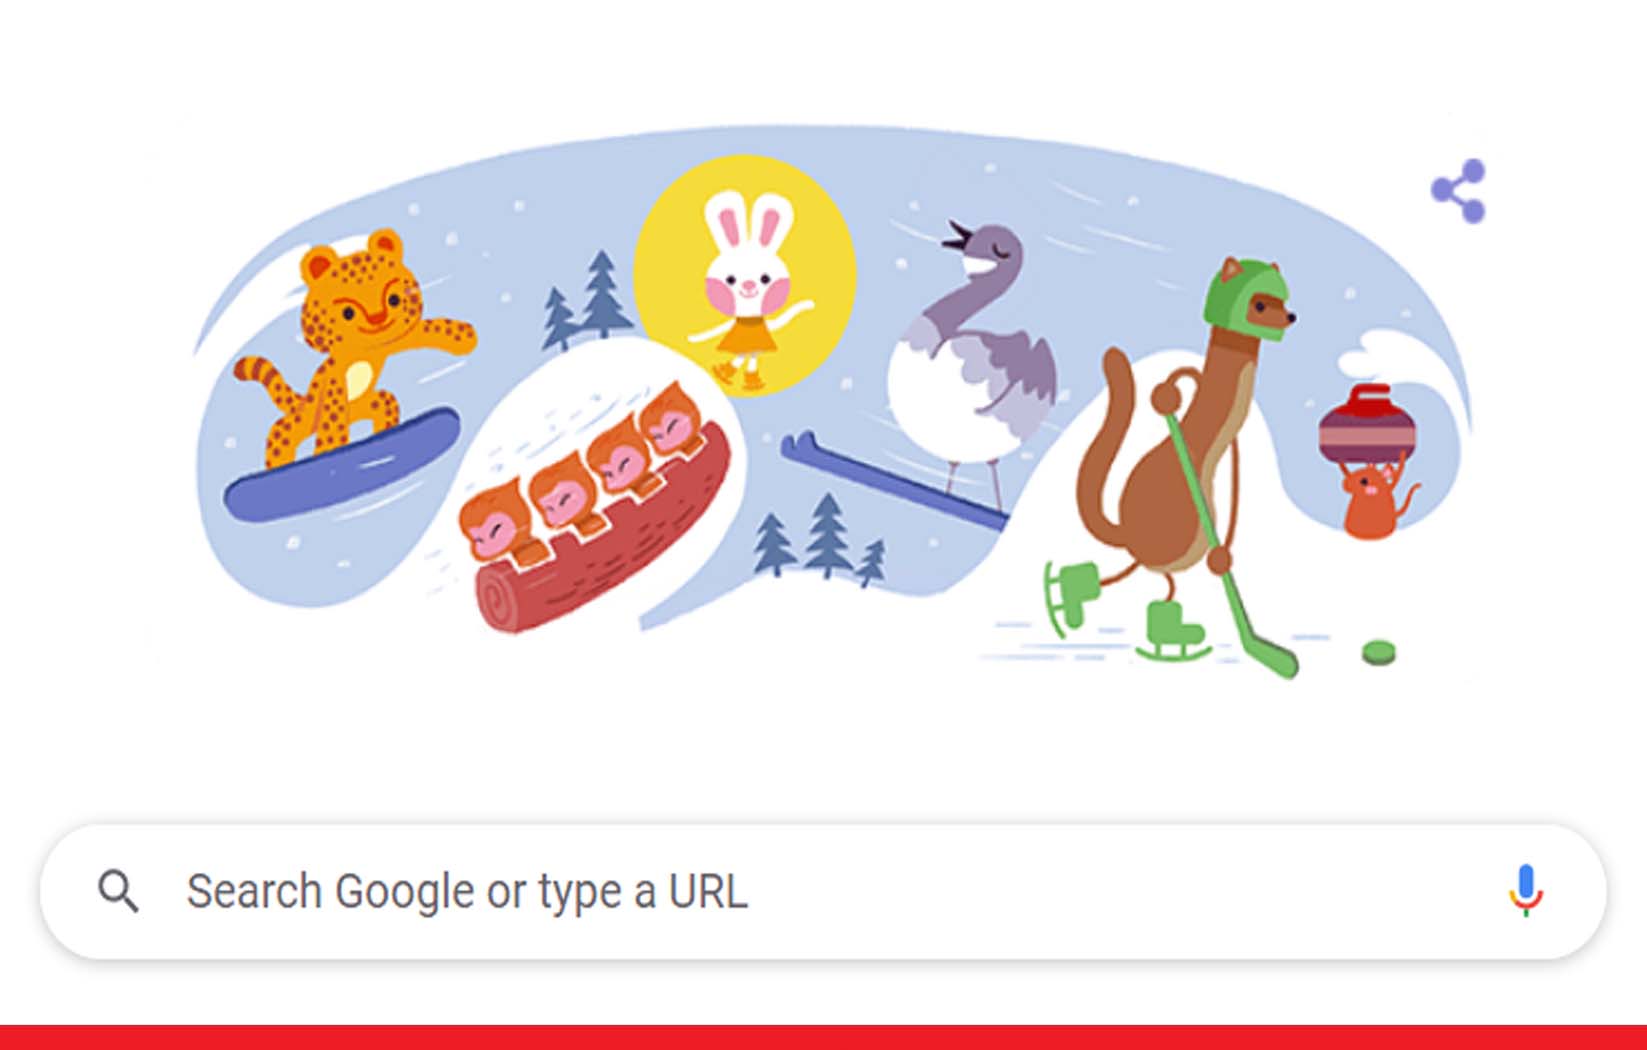 शीतकालीन ओलंपिक 2022 का शुभारंभ, गूगल ने बनाया डूडल